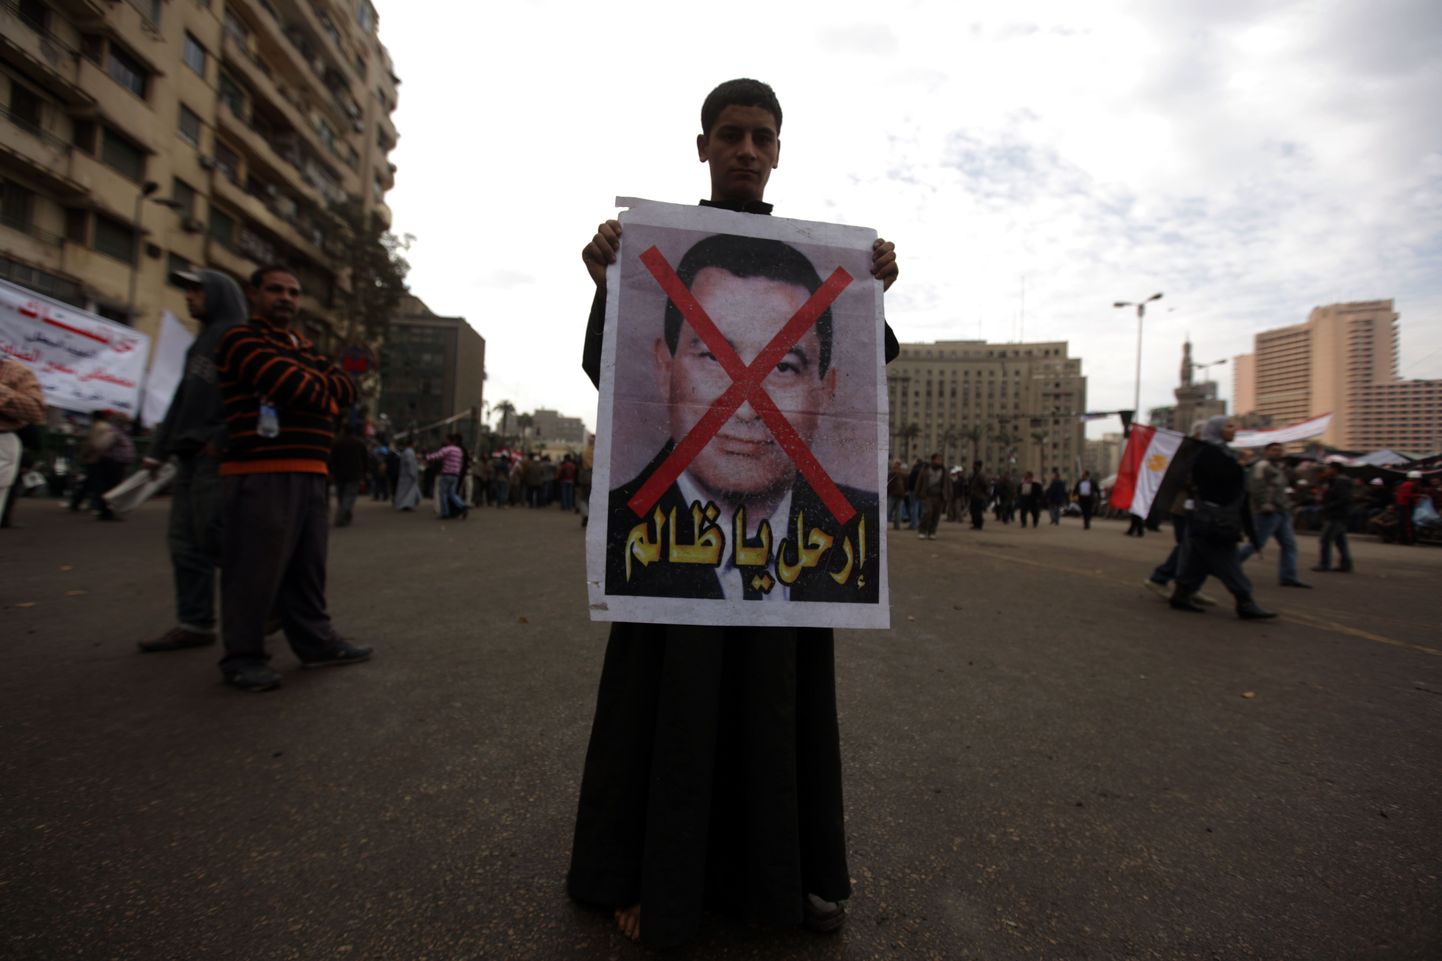 Egiptuse endine president Hosni Mubarak valmistub surema? Fotol protestija Mubaraki näopildiga plakatiga